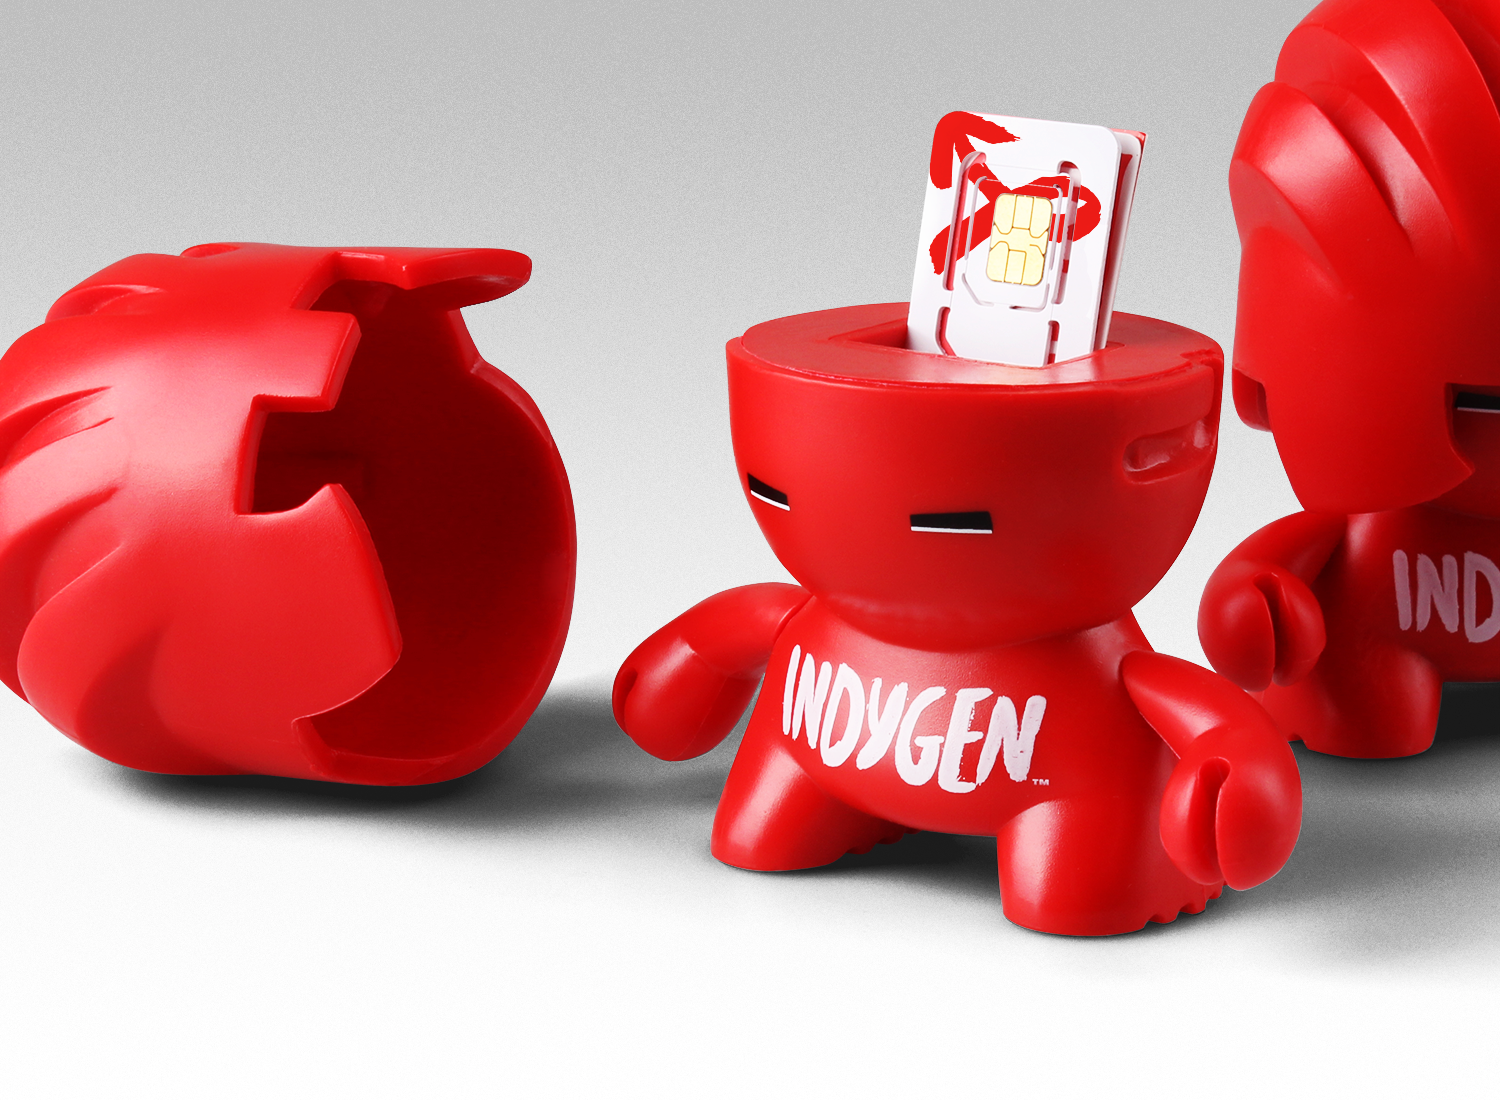 Indygen-by-Vodafone-Designed-by-Ciprian-Badalan-designer-toy-opened